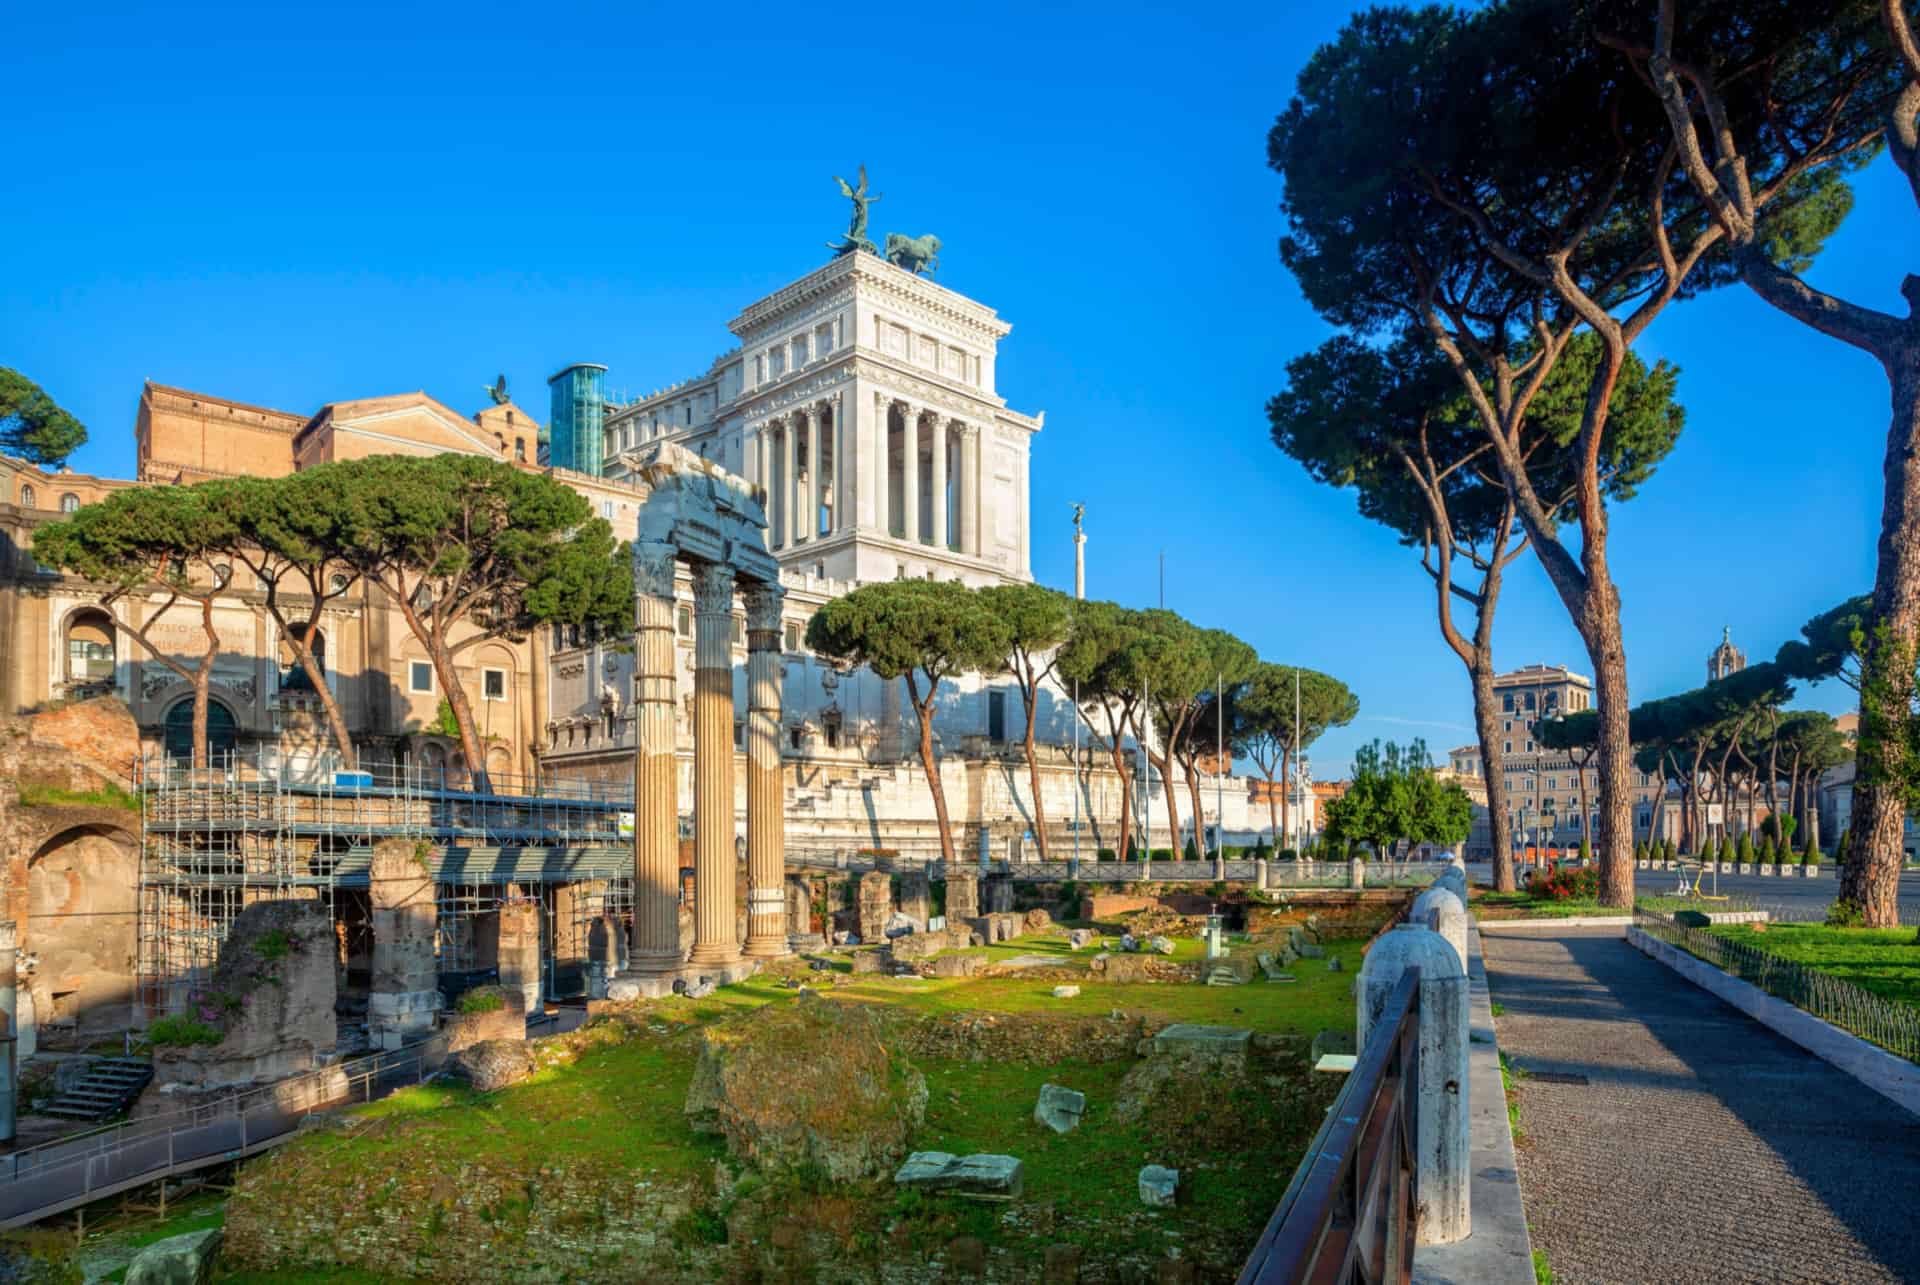 visiter rome et le forum romain